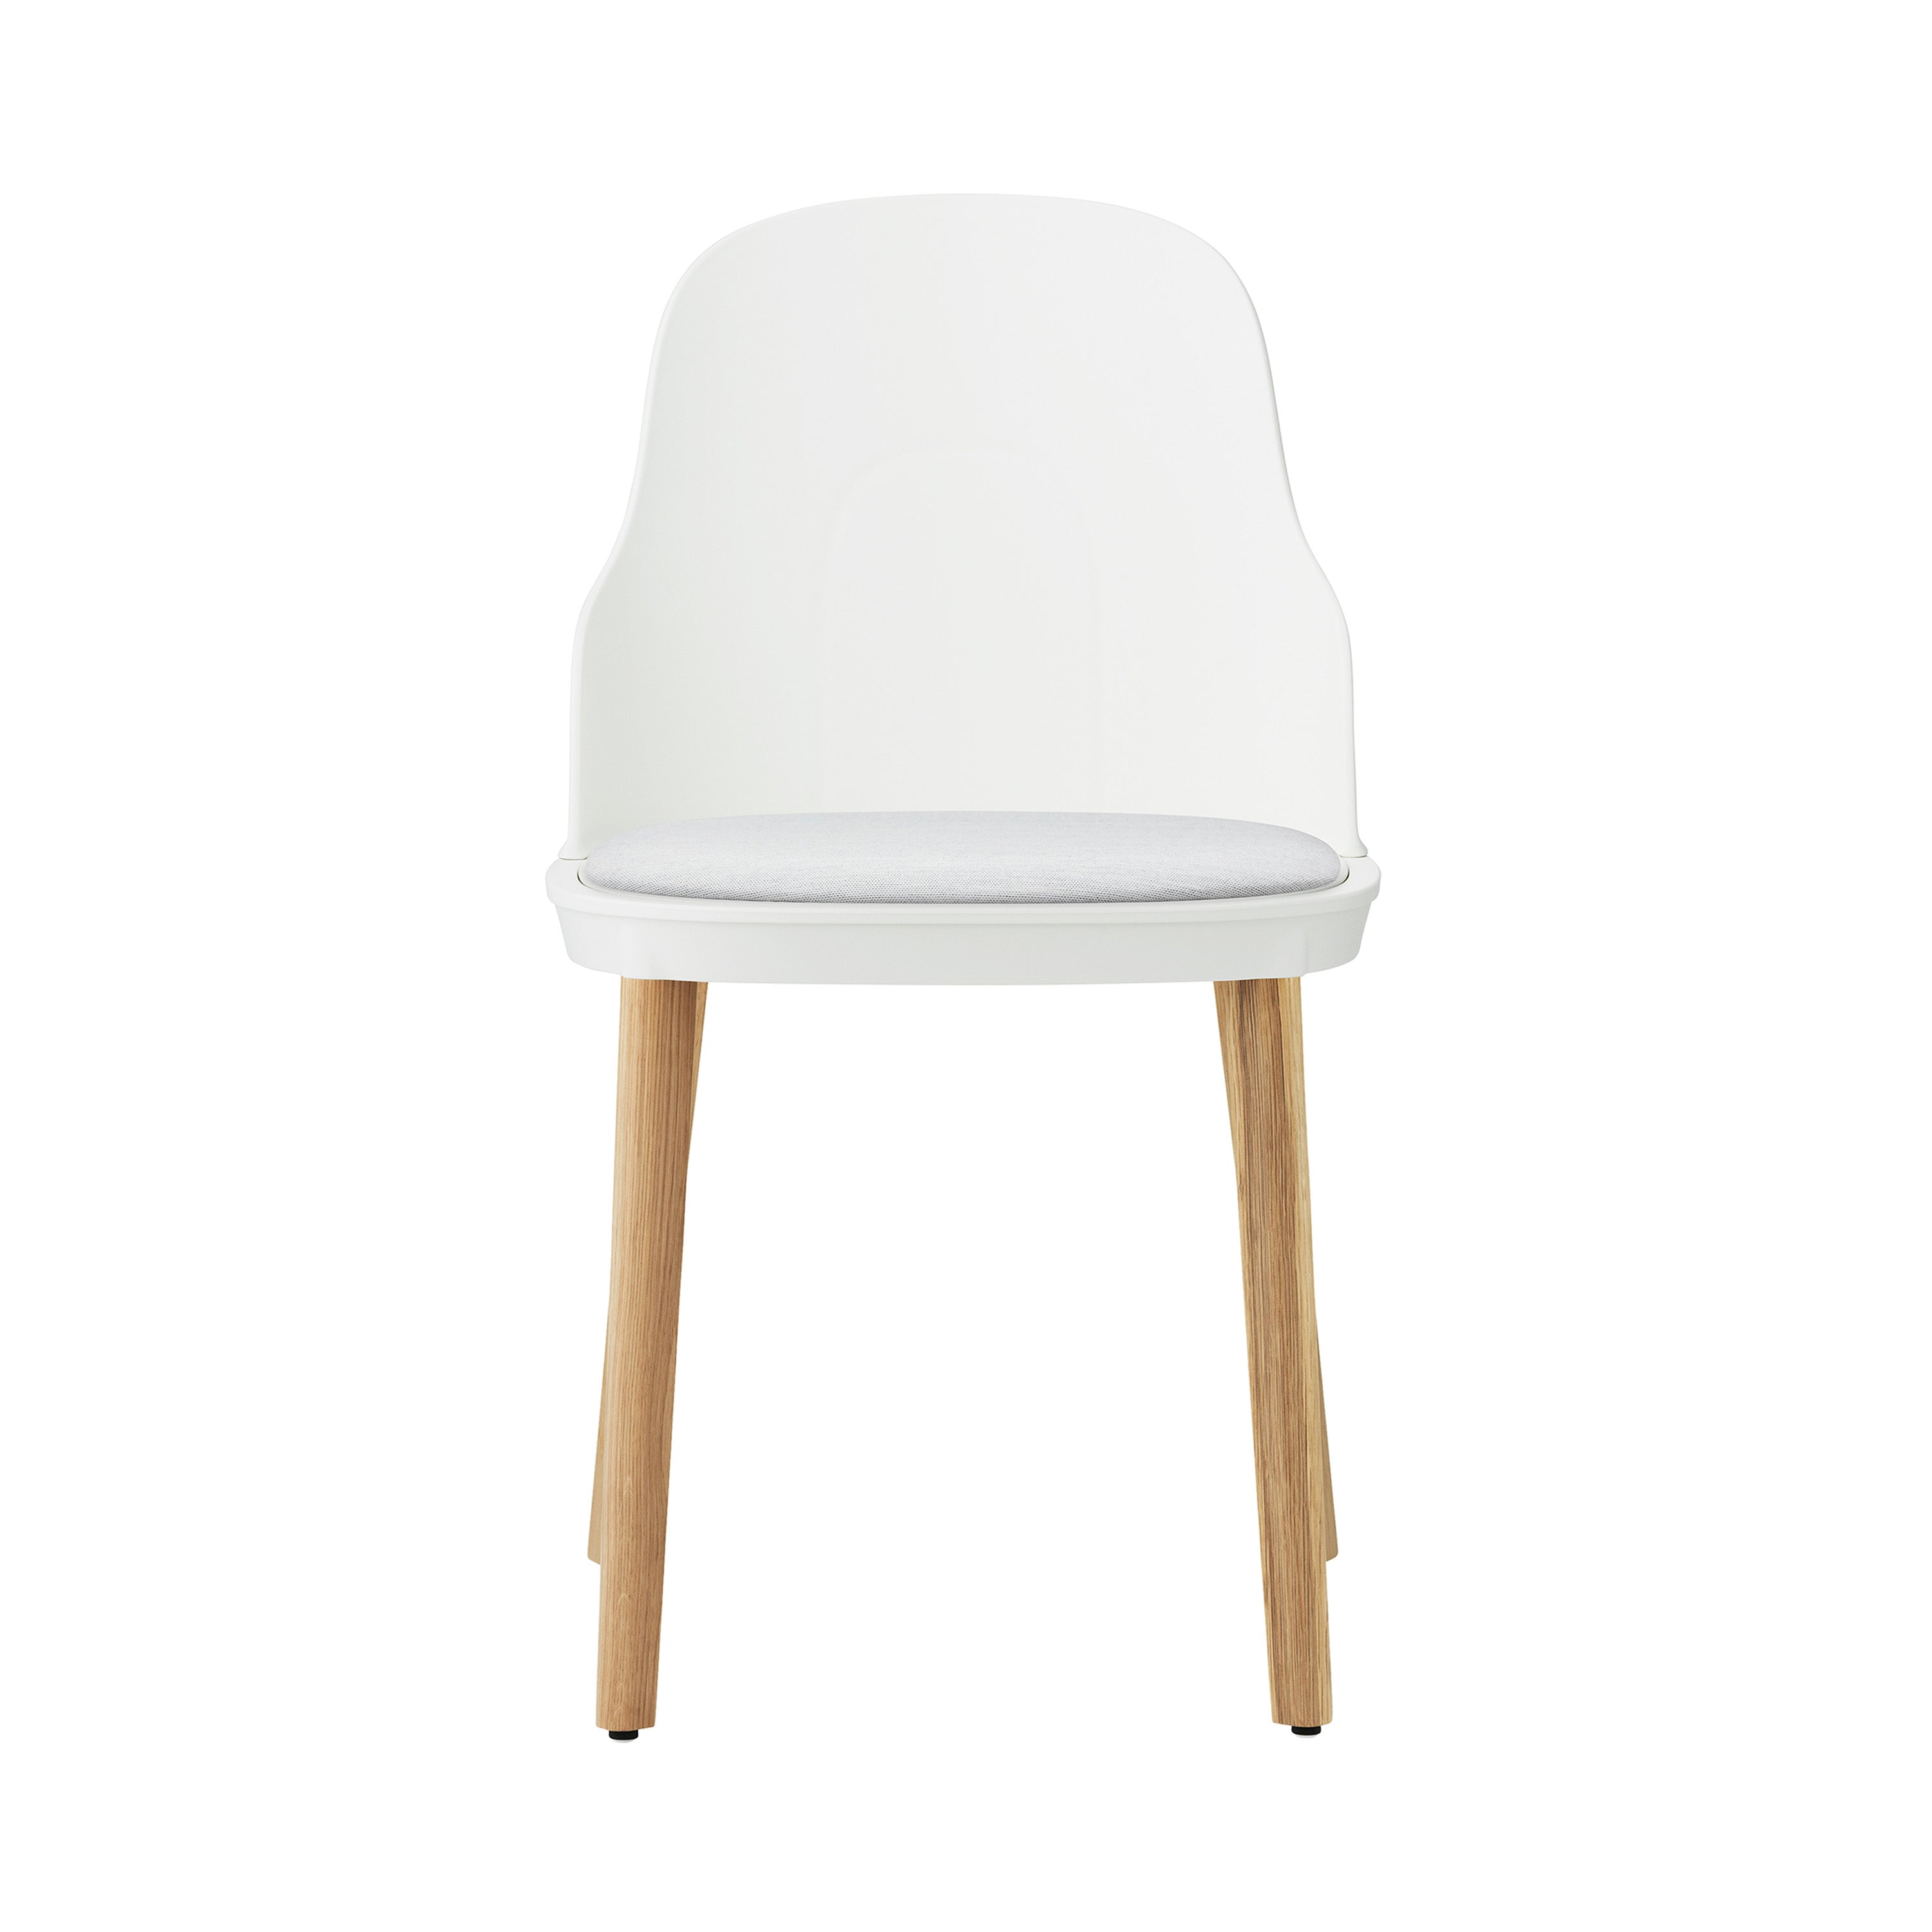 Allez Chair: Upholstered + White + Oak